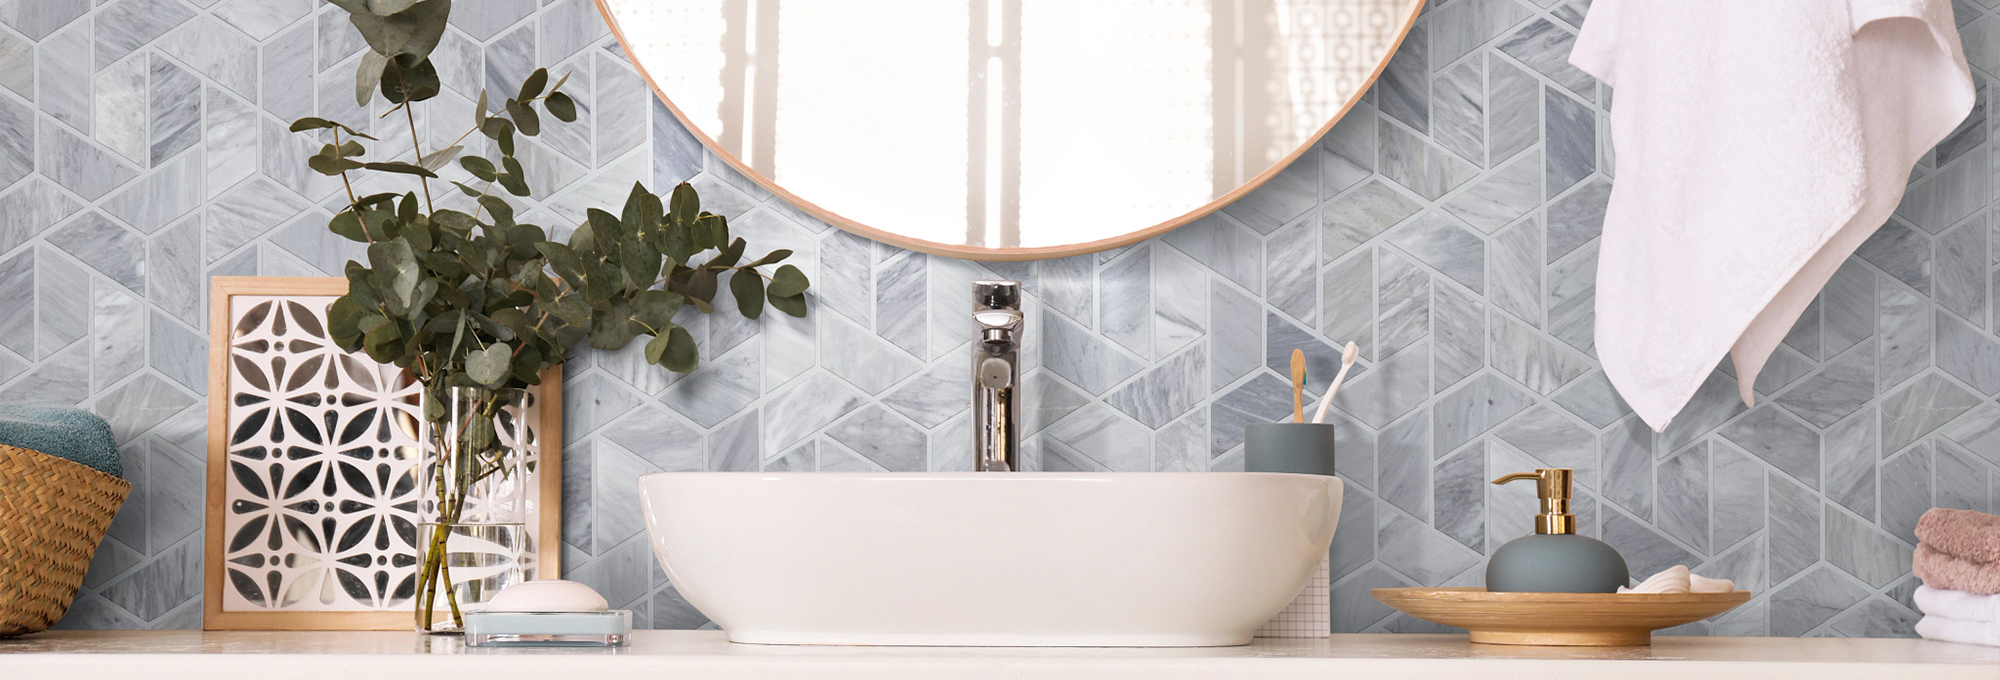 bathroom vanity with tile backsplash Komplete Flooring Inc Siren, WI